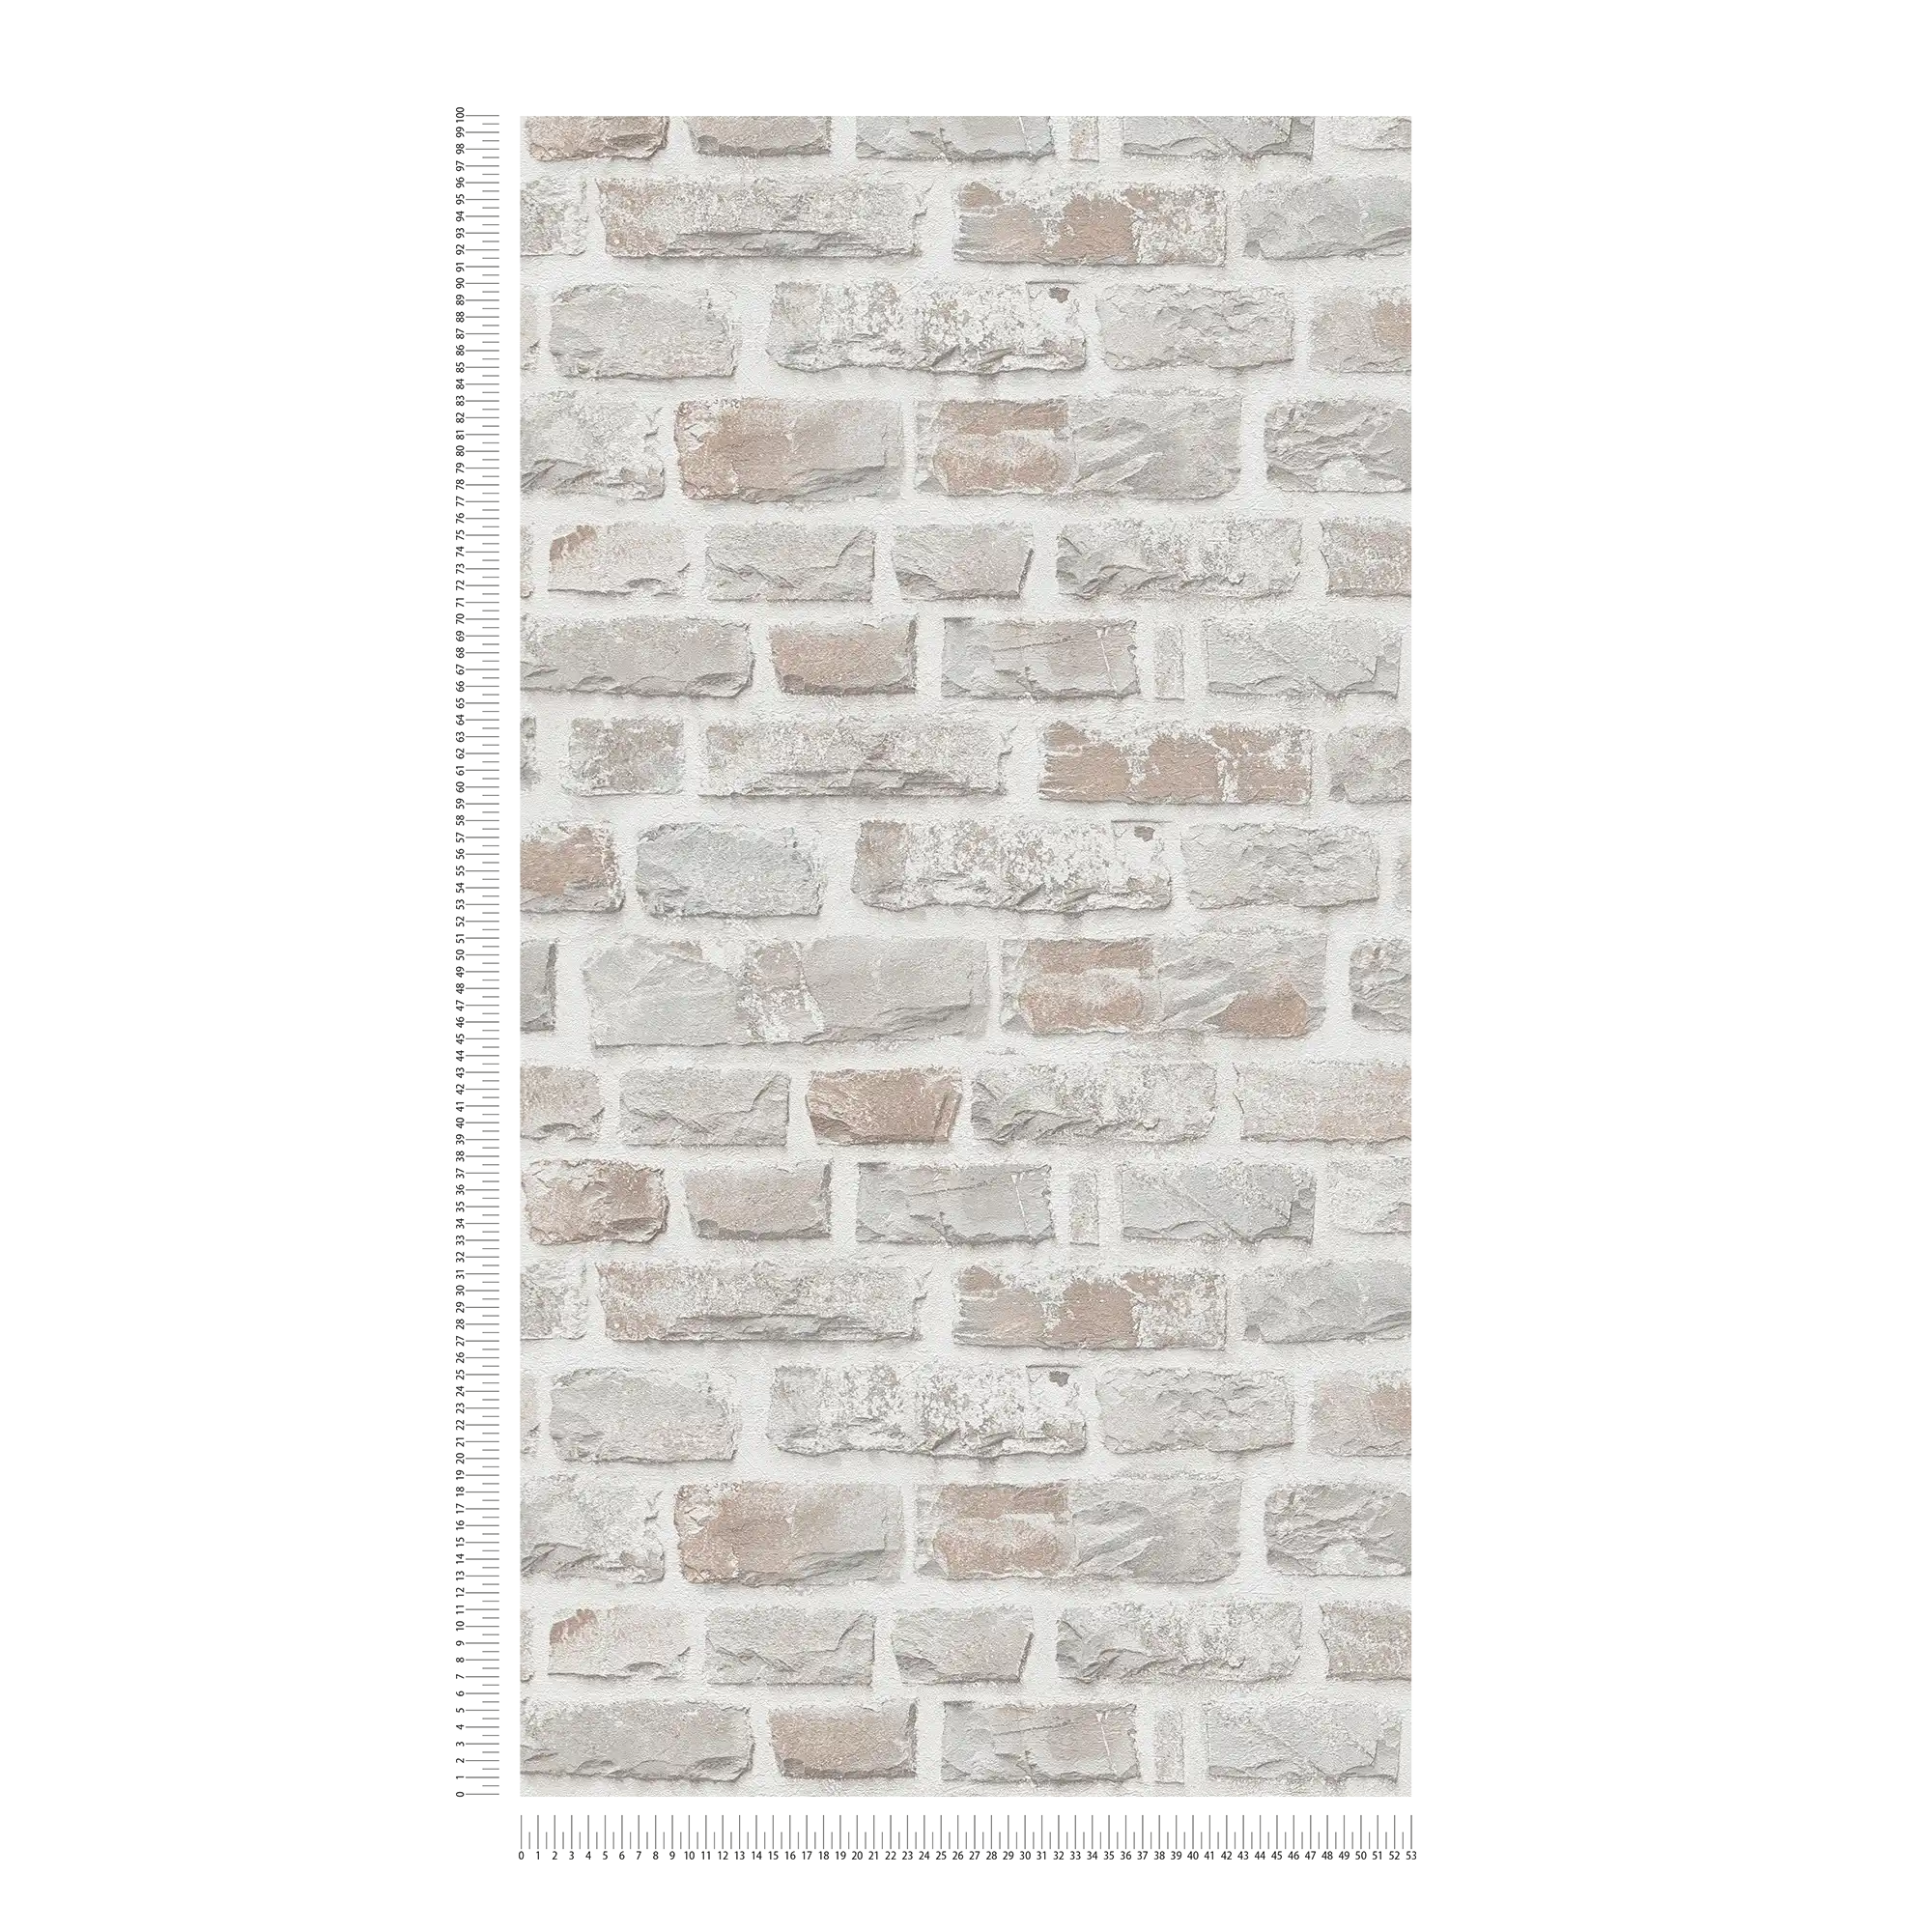             Papel pintado no tejido con pared de piedra natural sin PVC - gris, blanco
        